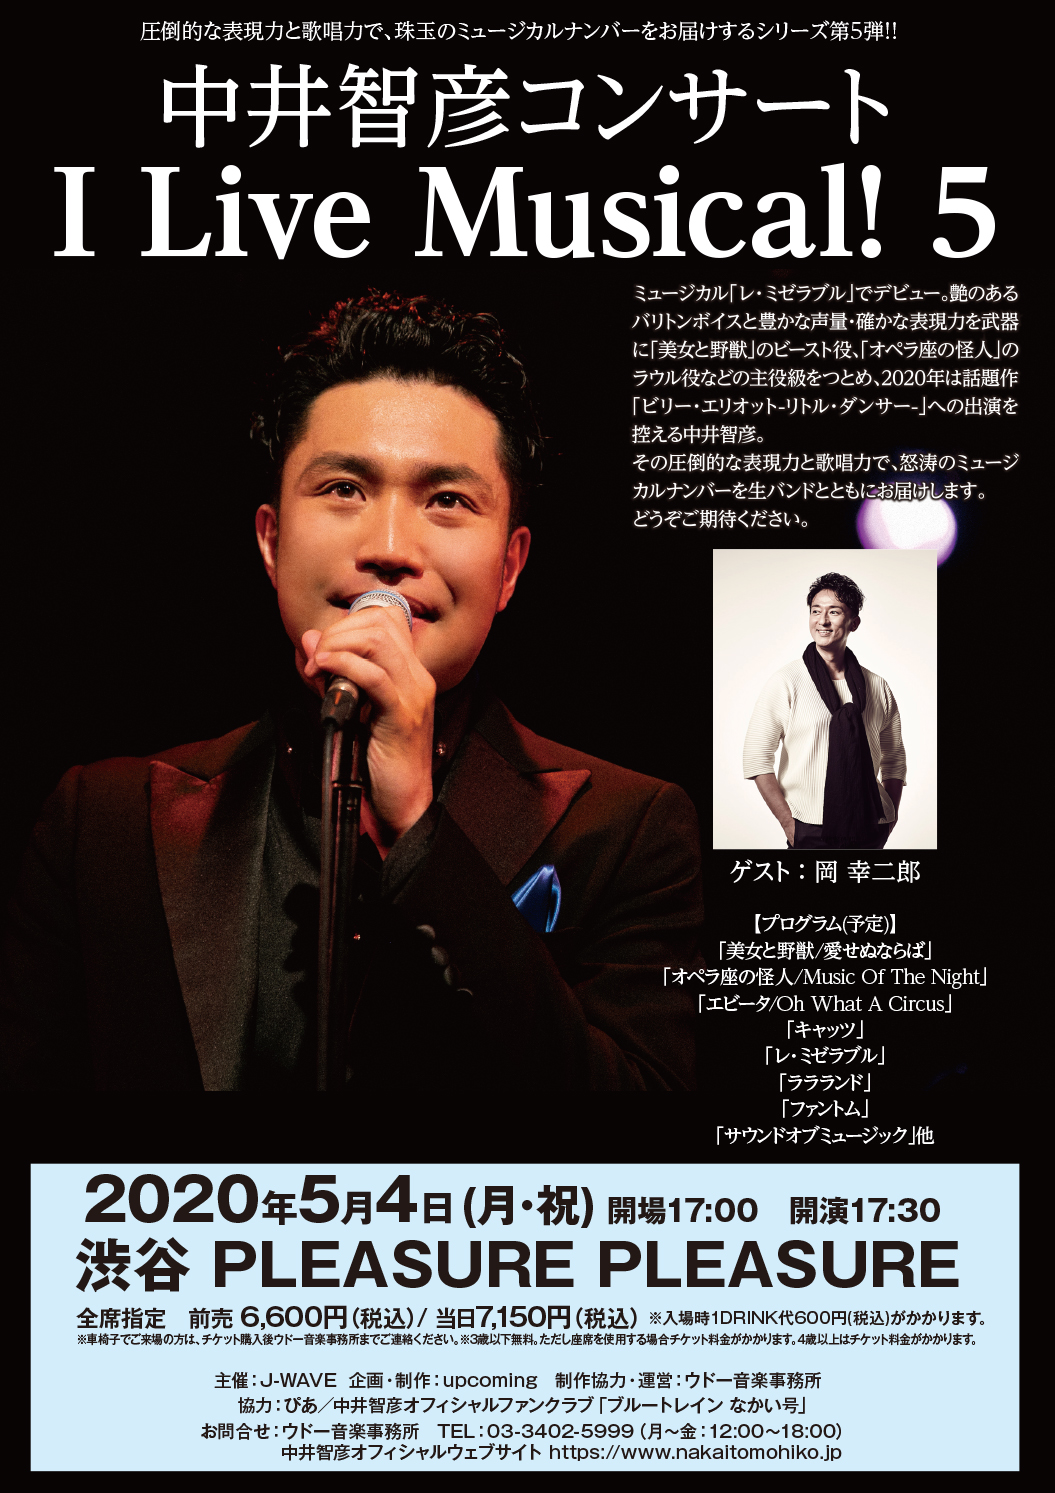 中井智彦コンサート 「I Live Musical! 5」